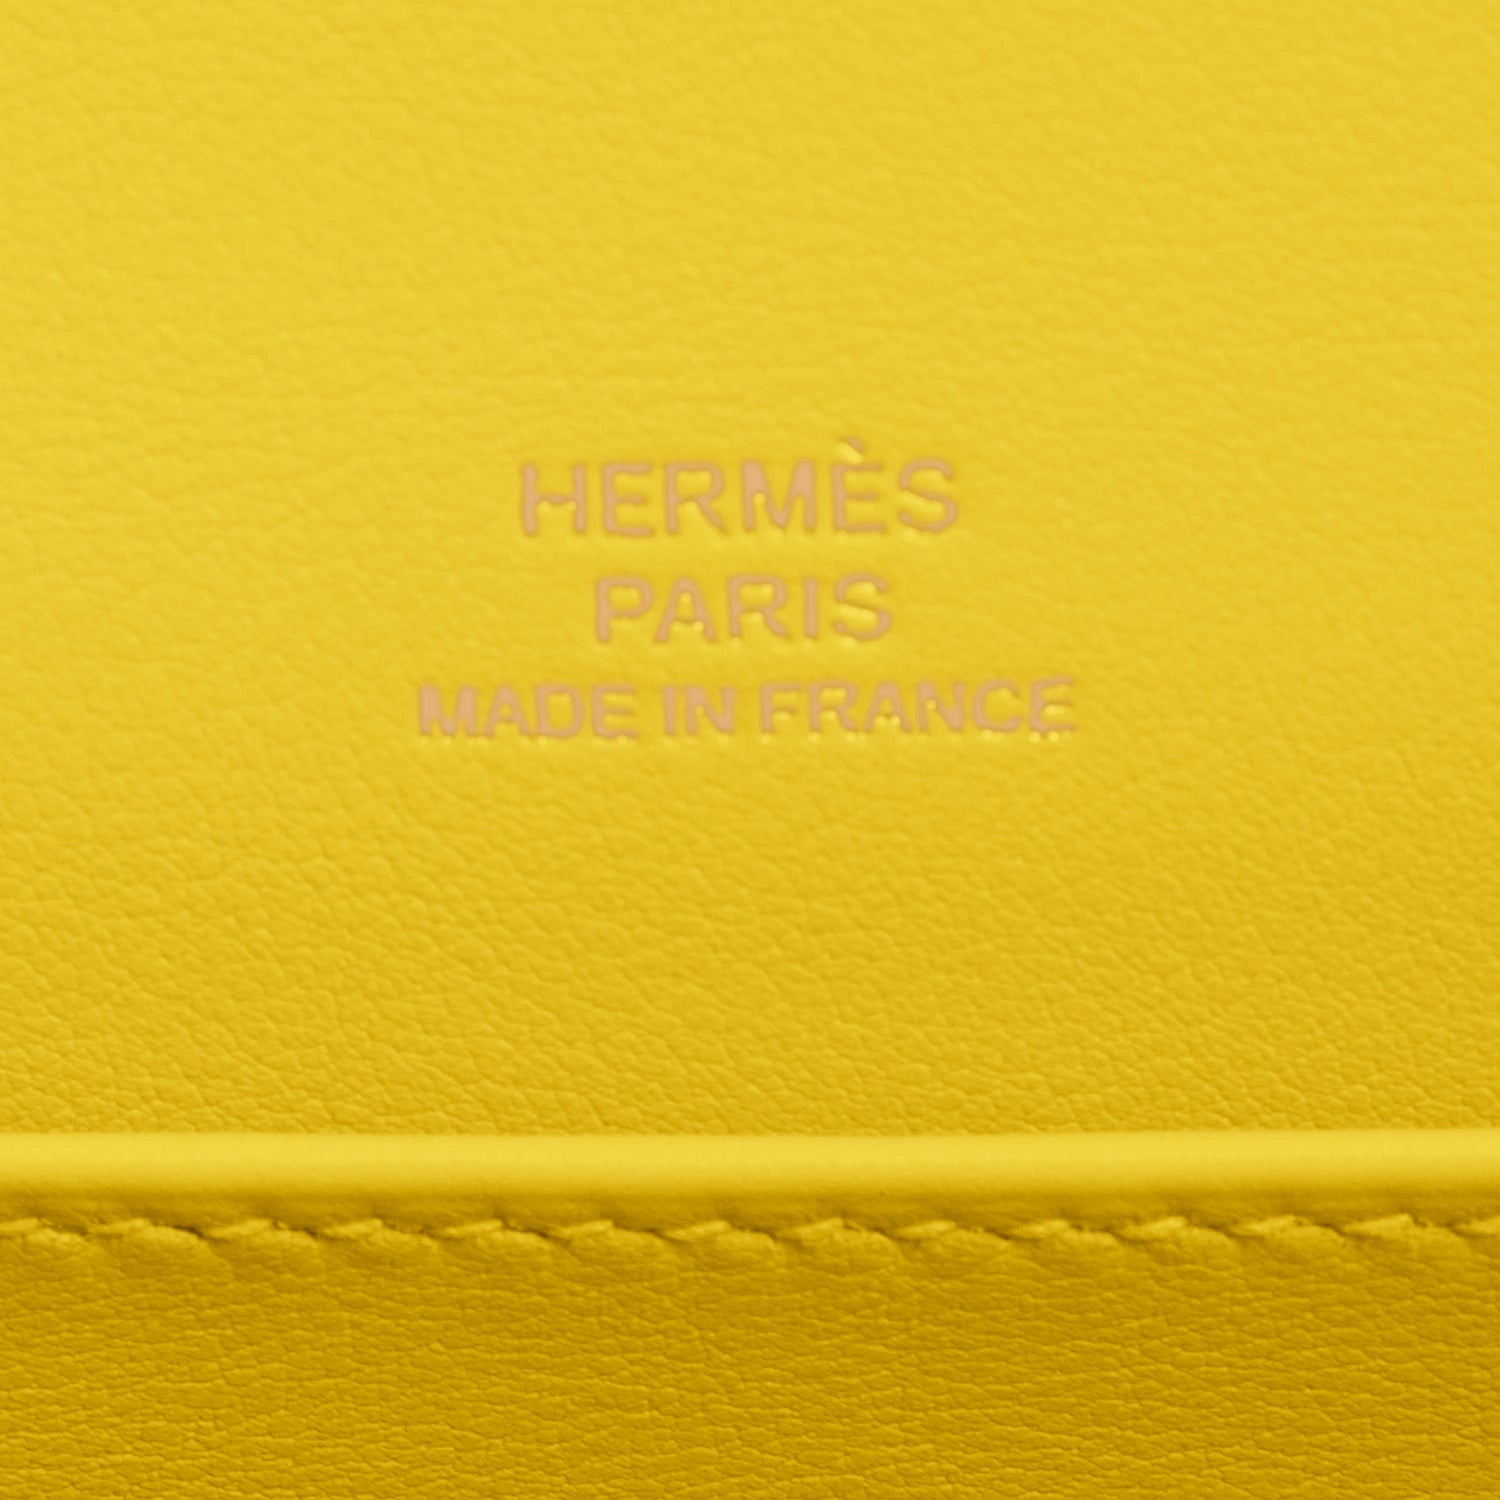 Hermes Kelly Pochette Blue France Gold Hardware Clutch Cut Bag U Stamp -  Chicjoy